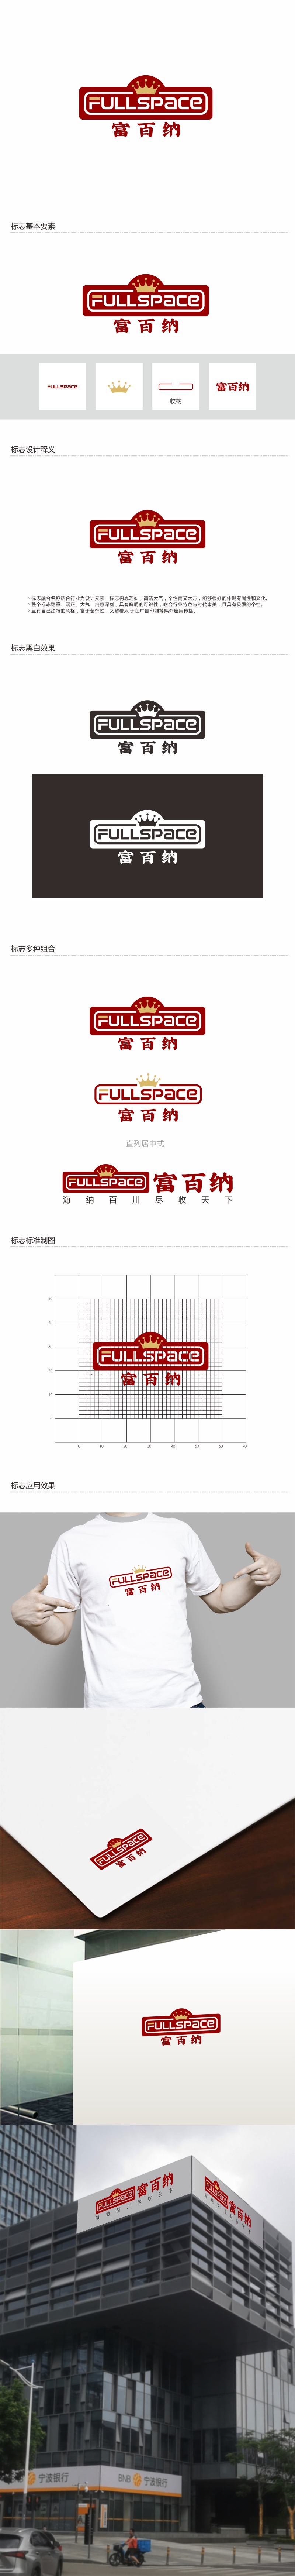 周战军的FullSpace富百纳logo设计